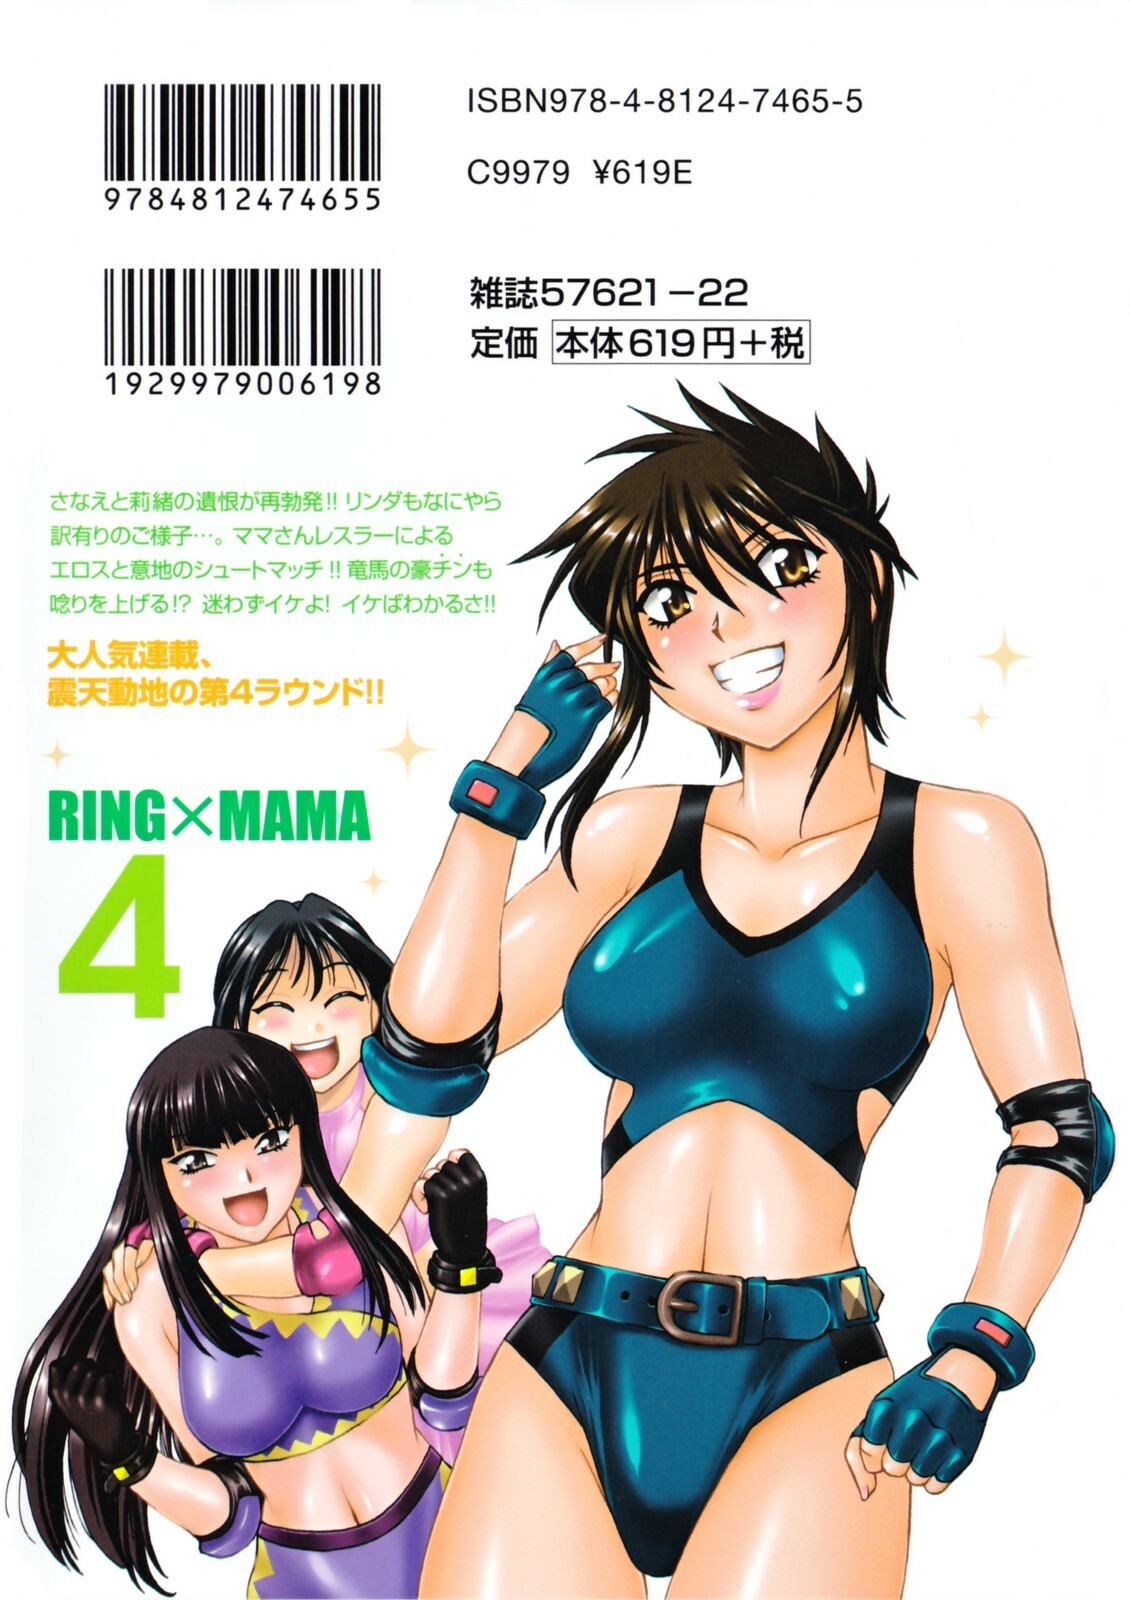 [Manabe Jouji] Ring x Mama 4 page 2 full